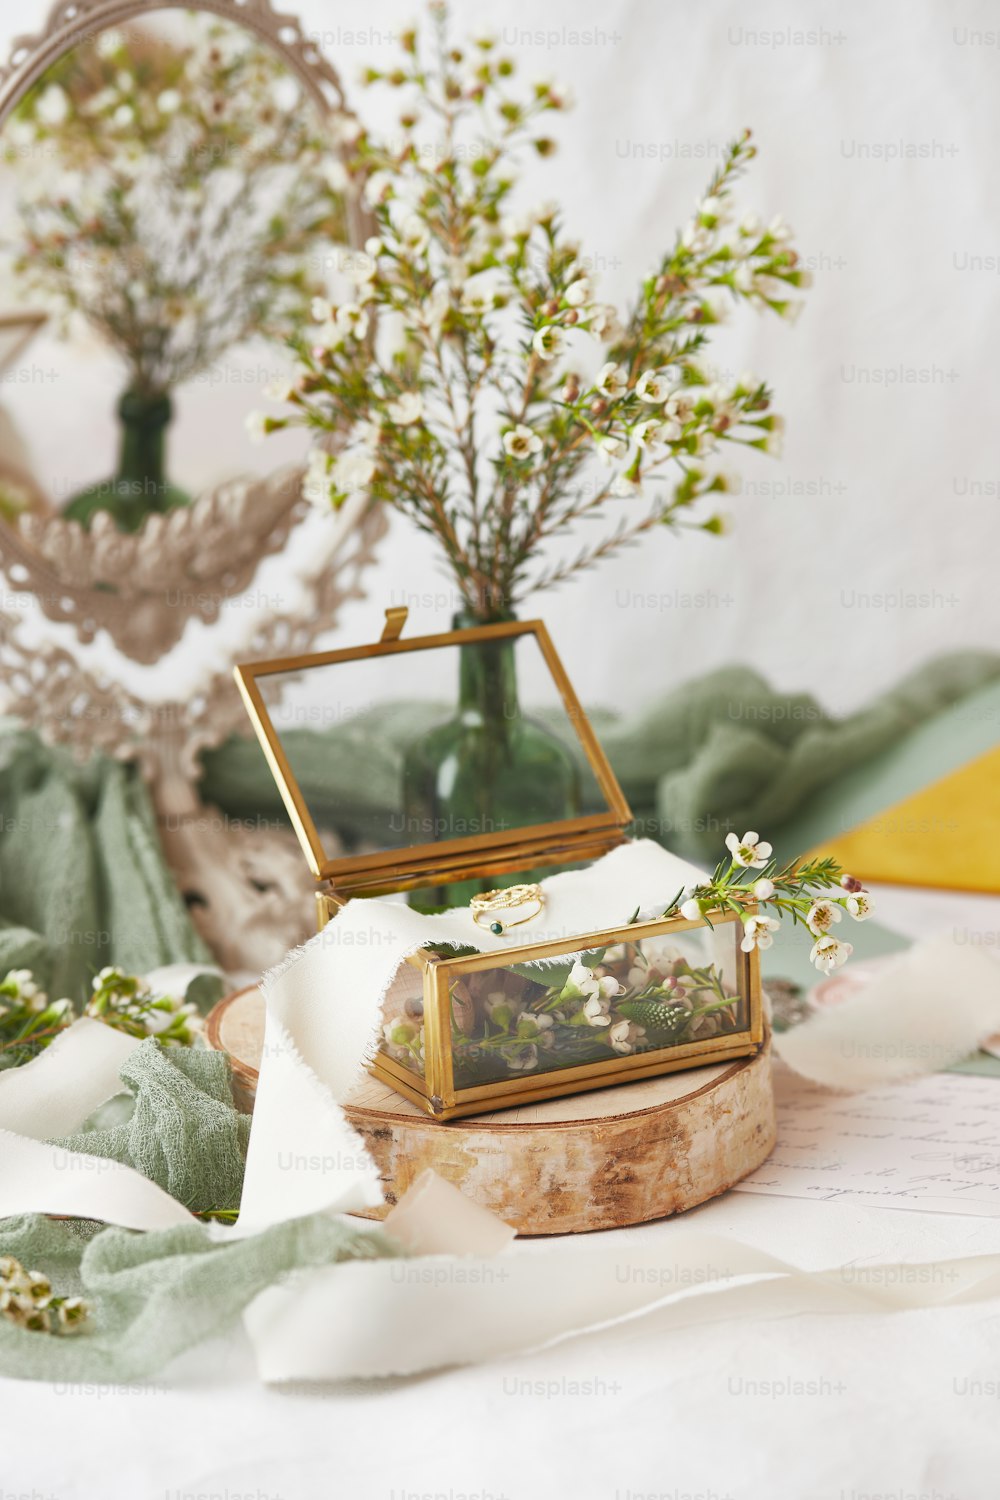 une table surmontée d’un vase rempli de fleurs